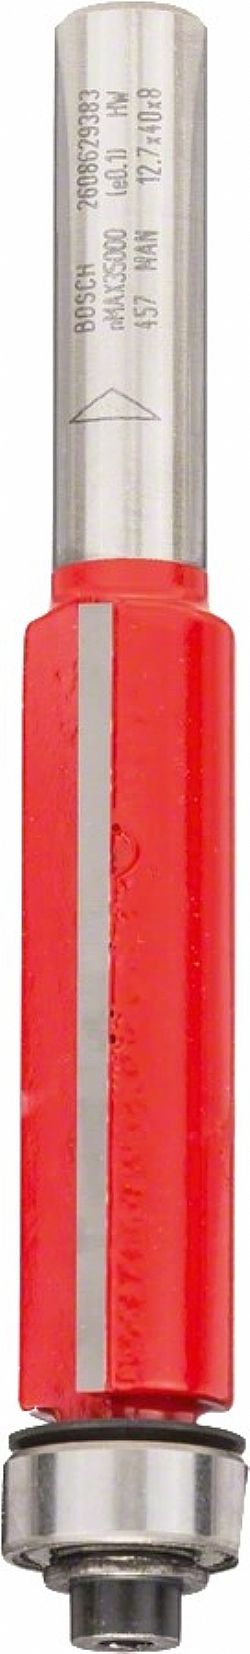 Κοπτικό Ρούτερ Φρέζα Κουρέματος με Ρουλεμάν οδηγό 8mm (D)12.7mm/(L)40mm κάτω Δίκοπη Σκληρομέταλλο BOSCH